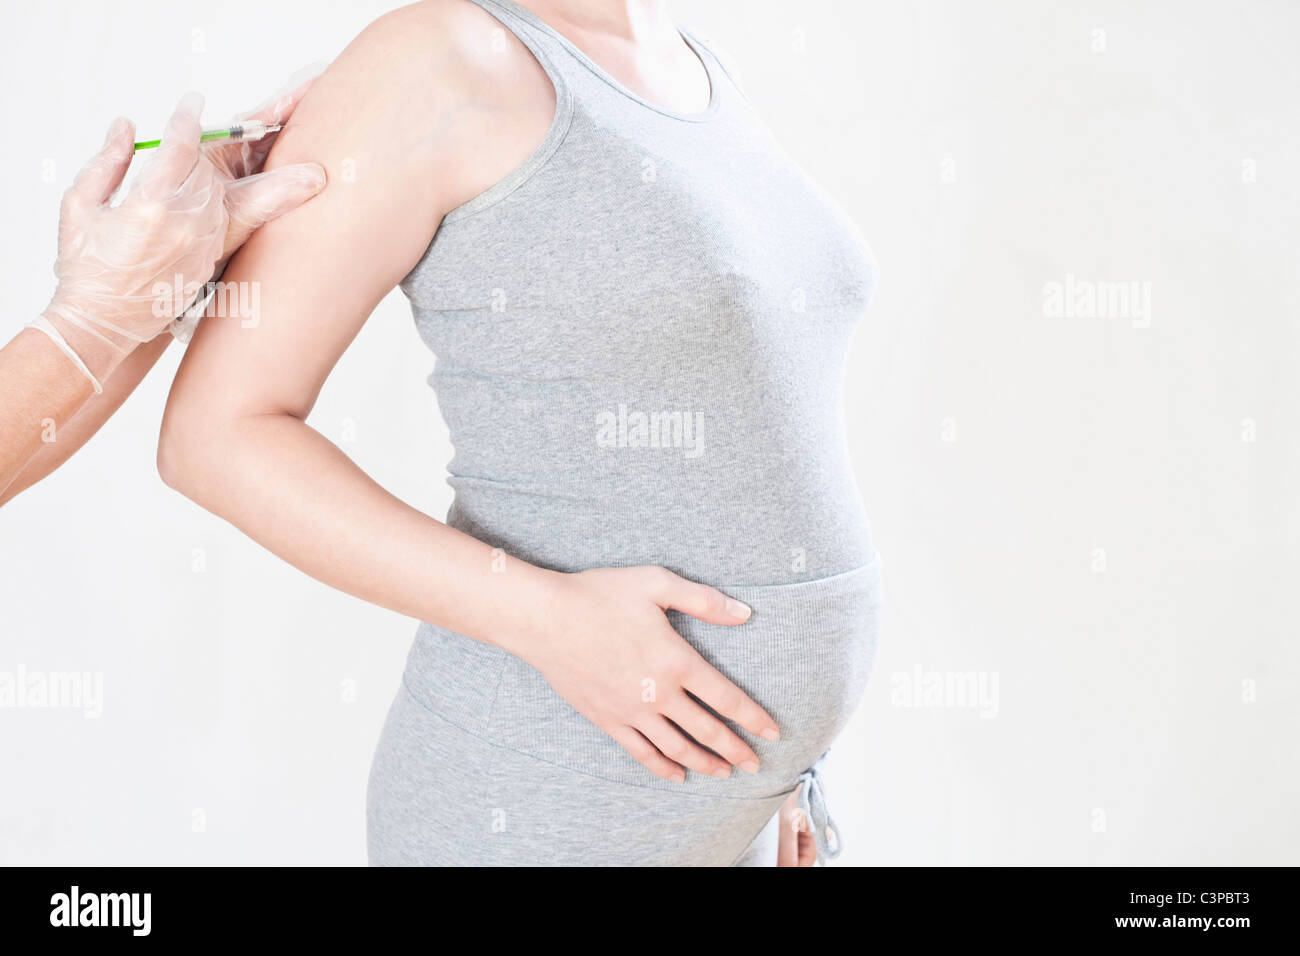 Femme enceinte obtenir une injection, mid section, side view Banque D'Images